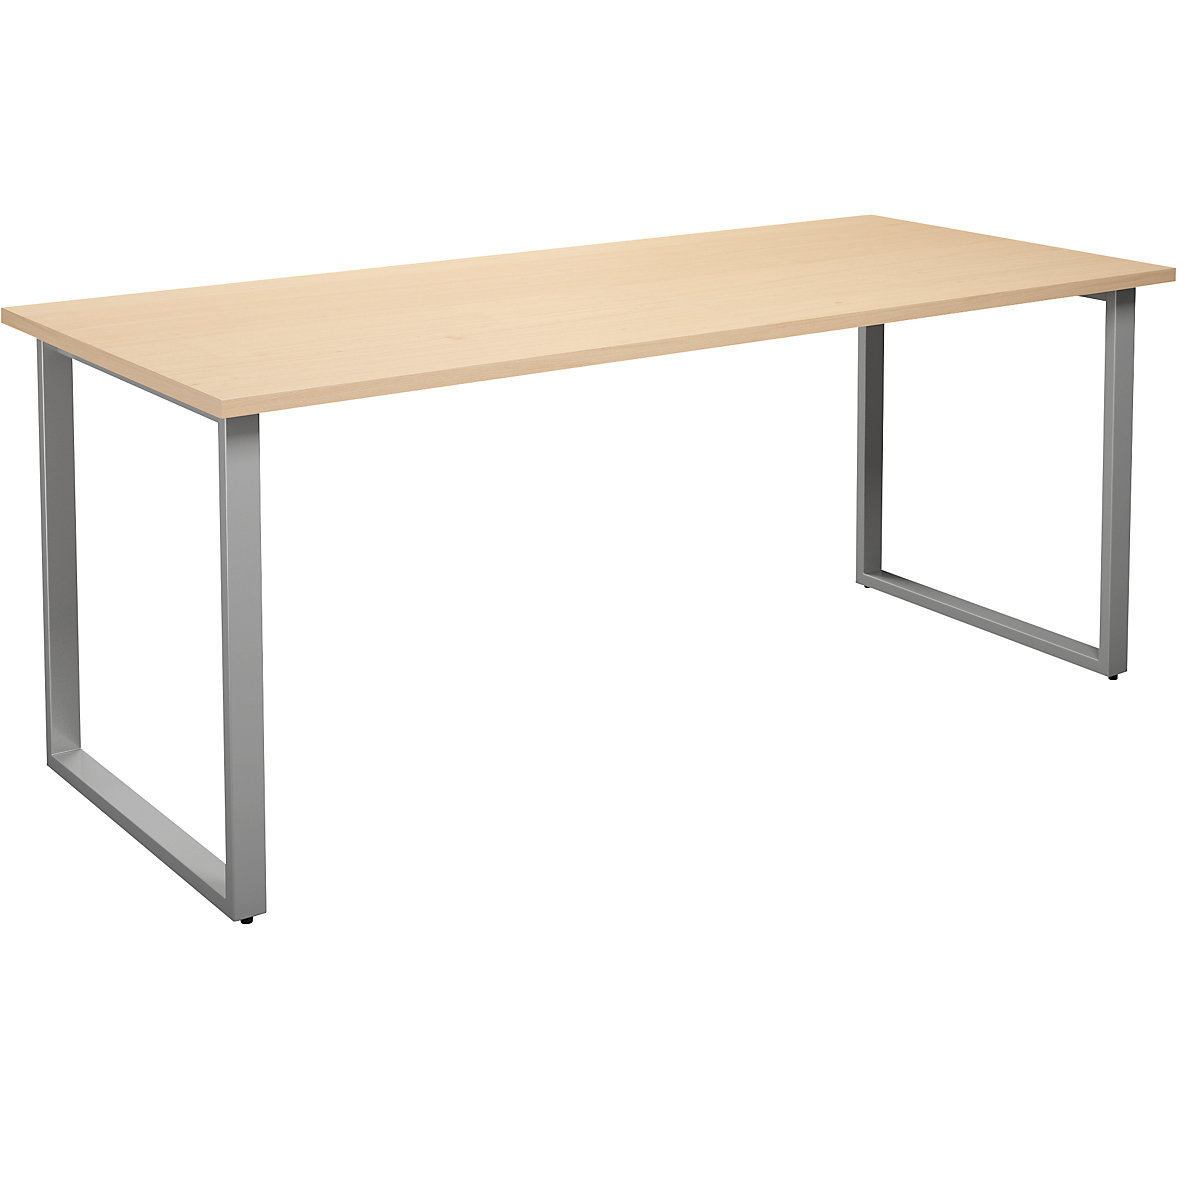 DUO-O multi-purpose desk, straight tabletop, WxD 1800 x 800 mm, birch, silver-10